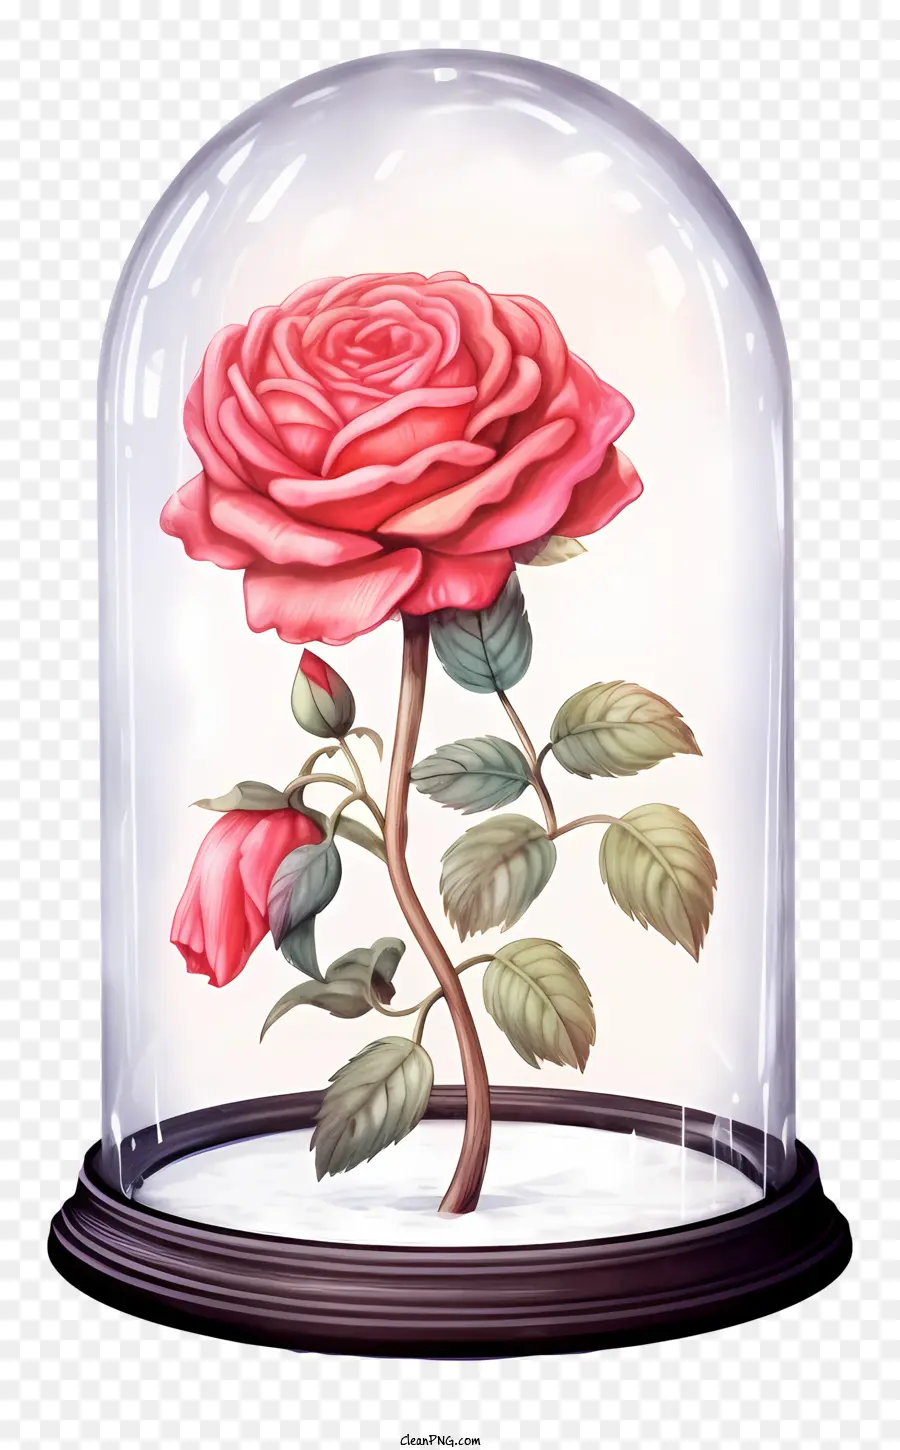 rosa rose - Nahaufnahme rosa Rose im Glasglockenglas